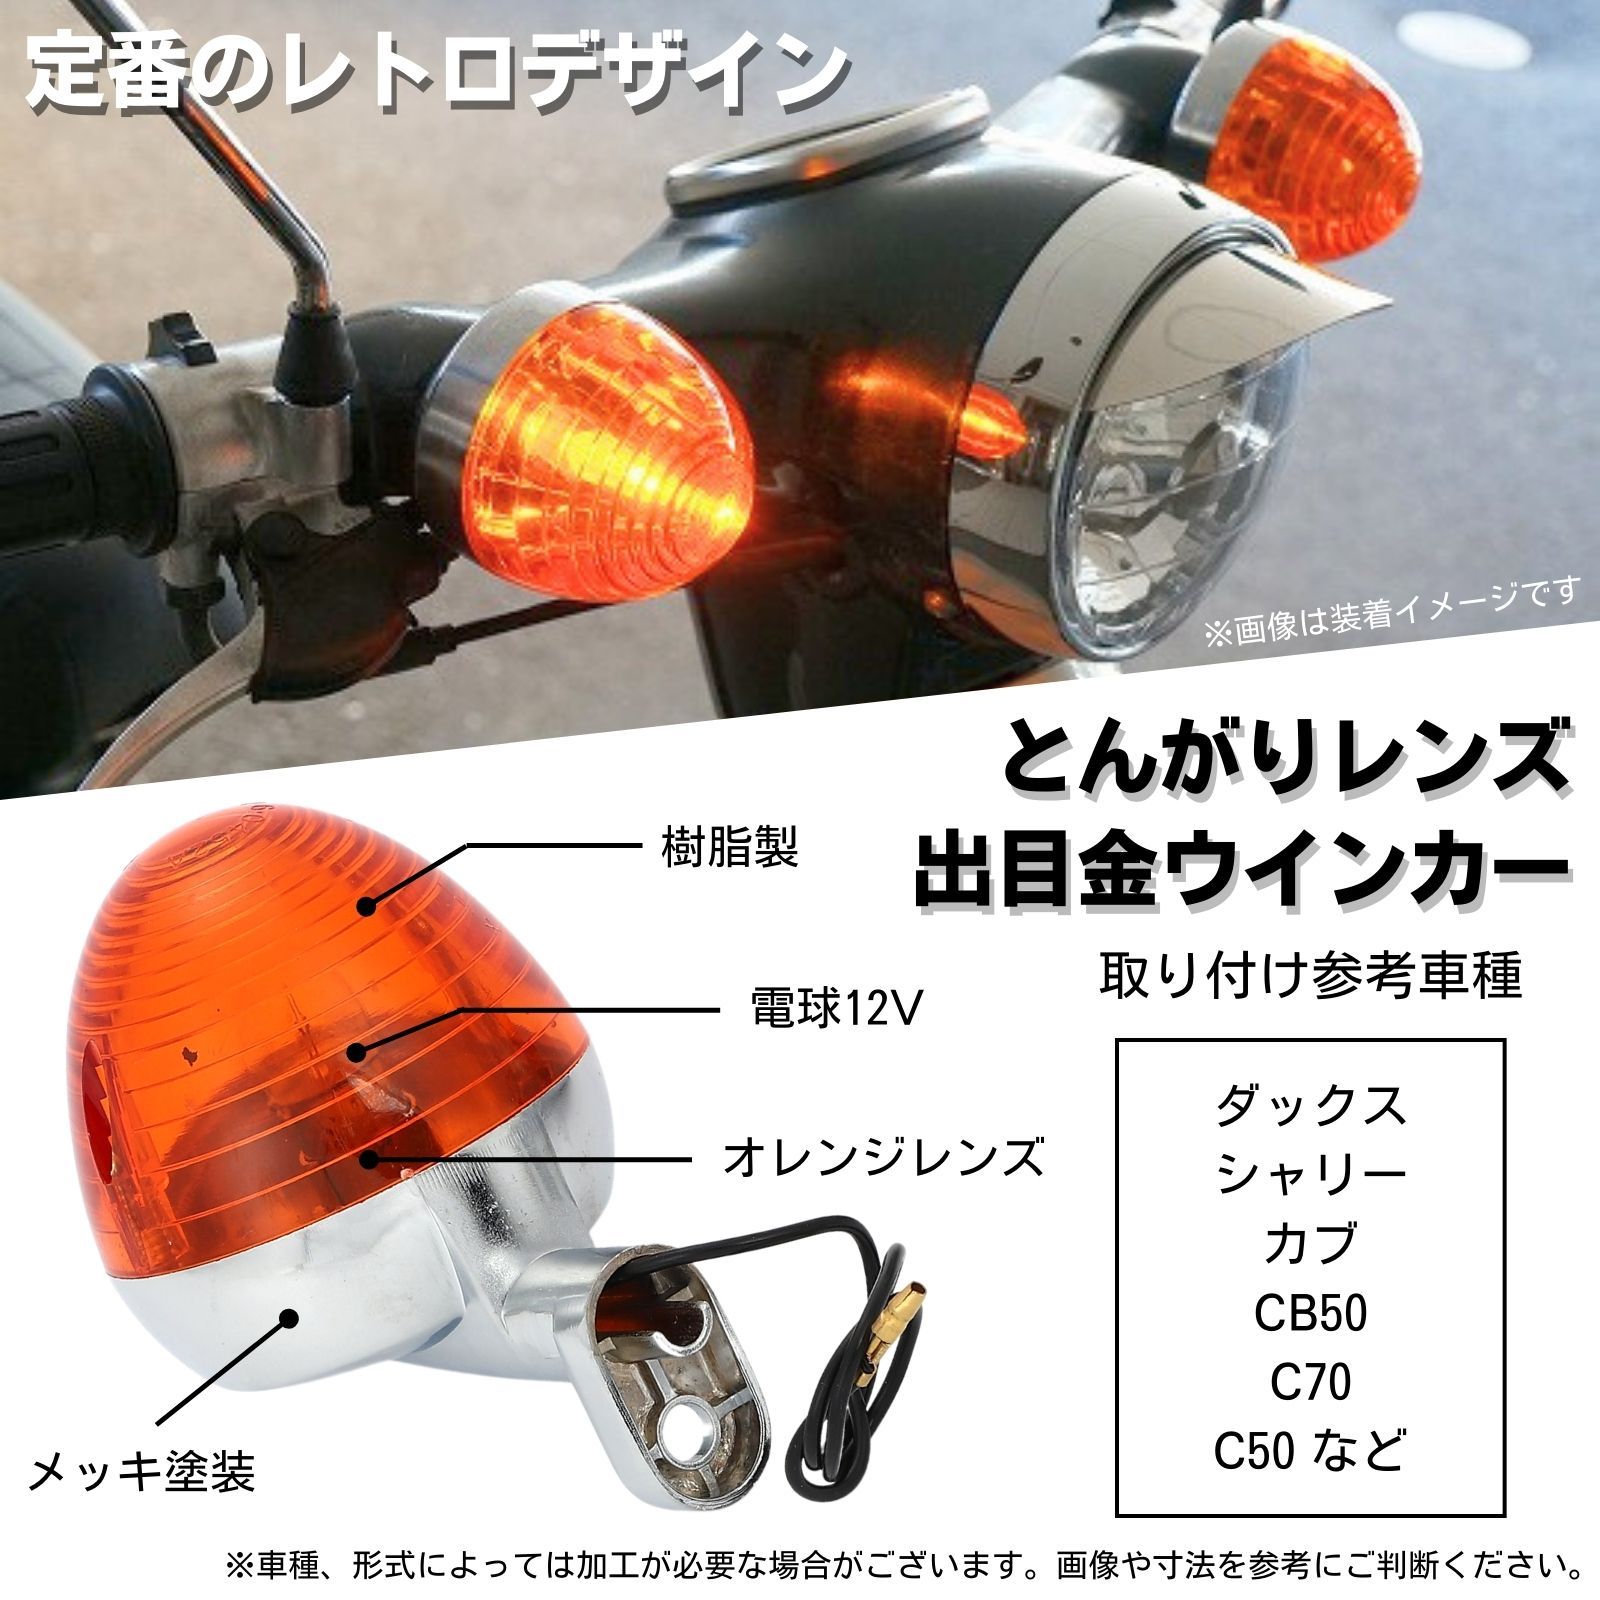 ダックス シャリー カブ 対応 CB50 C50 C70 ウインカー 交換 レンズ 4個セット バイク カスタム デメキン (オレンジ) - メルカリ